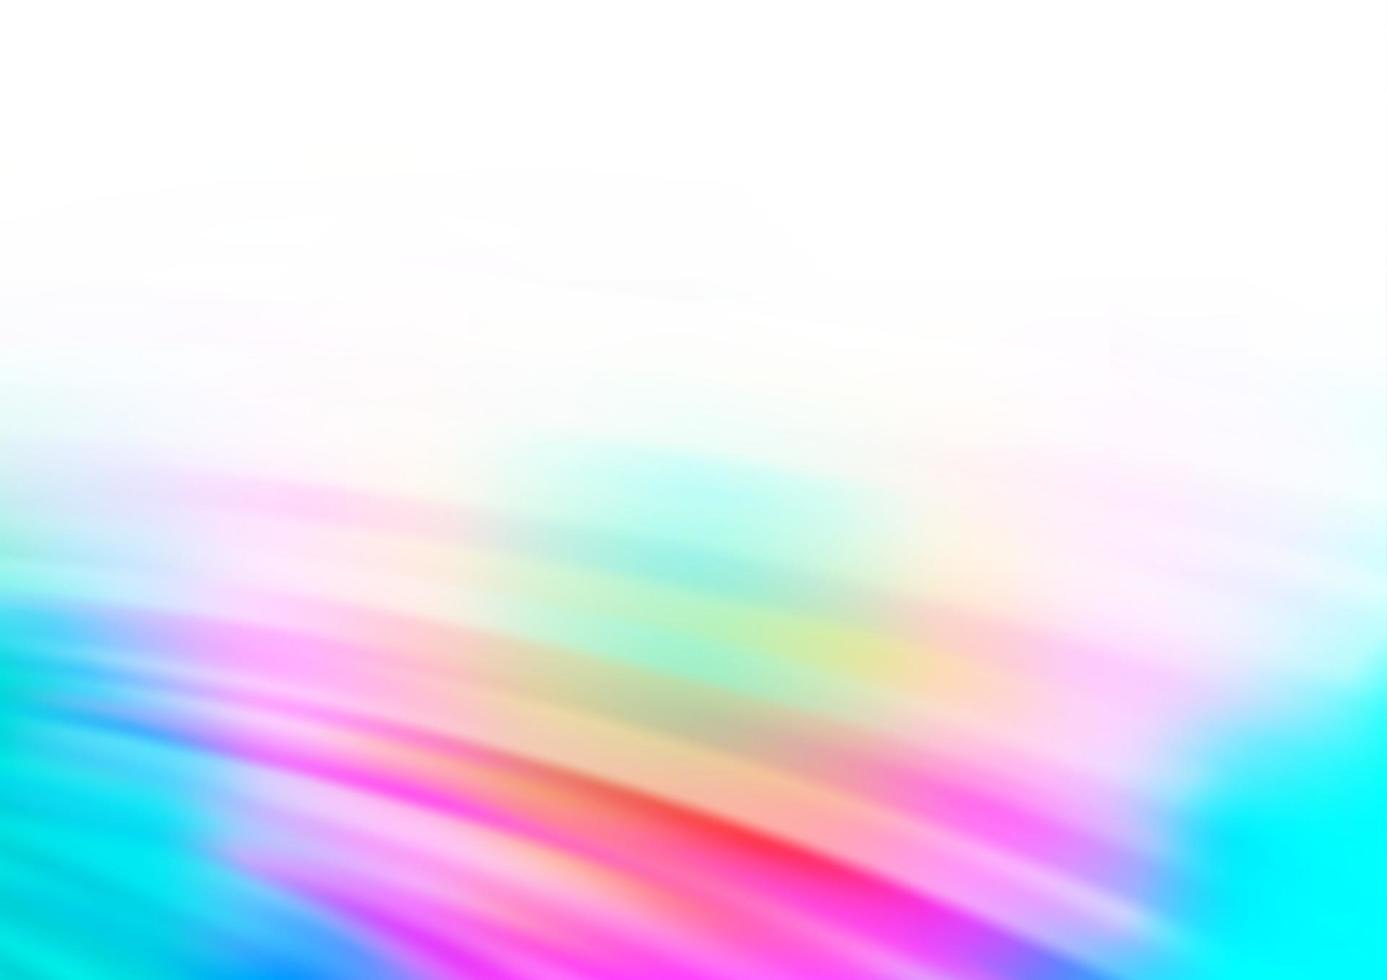 multicolore léger, motif vectoriel arc-en-ciel avec des rubans pliés.